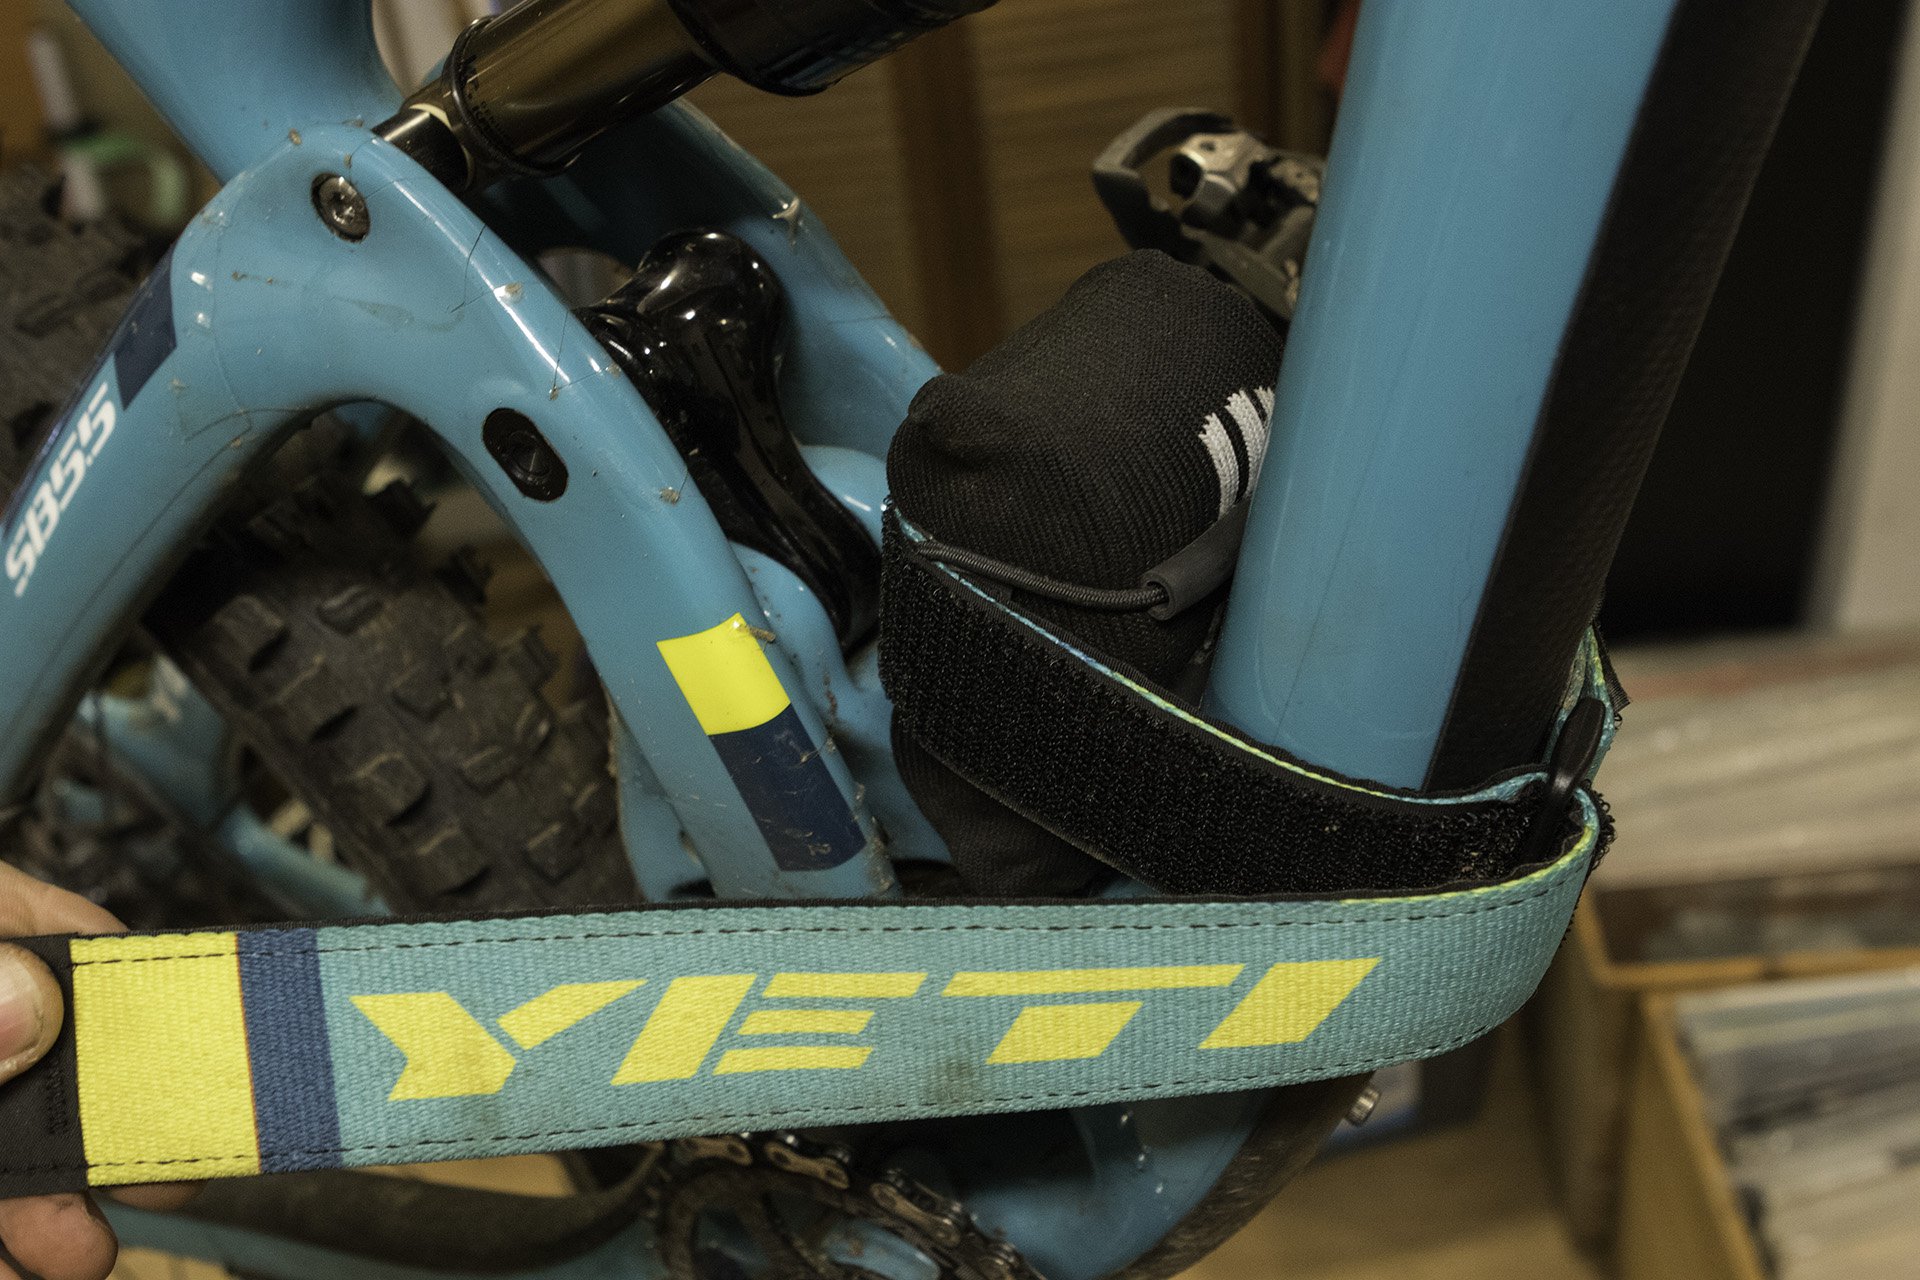 bike straps for tubes